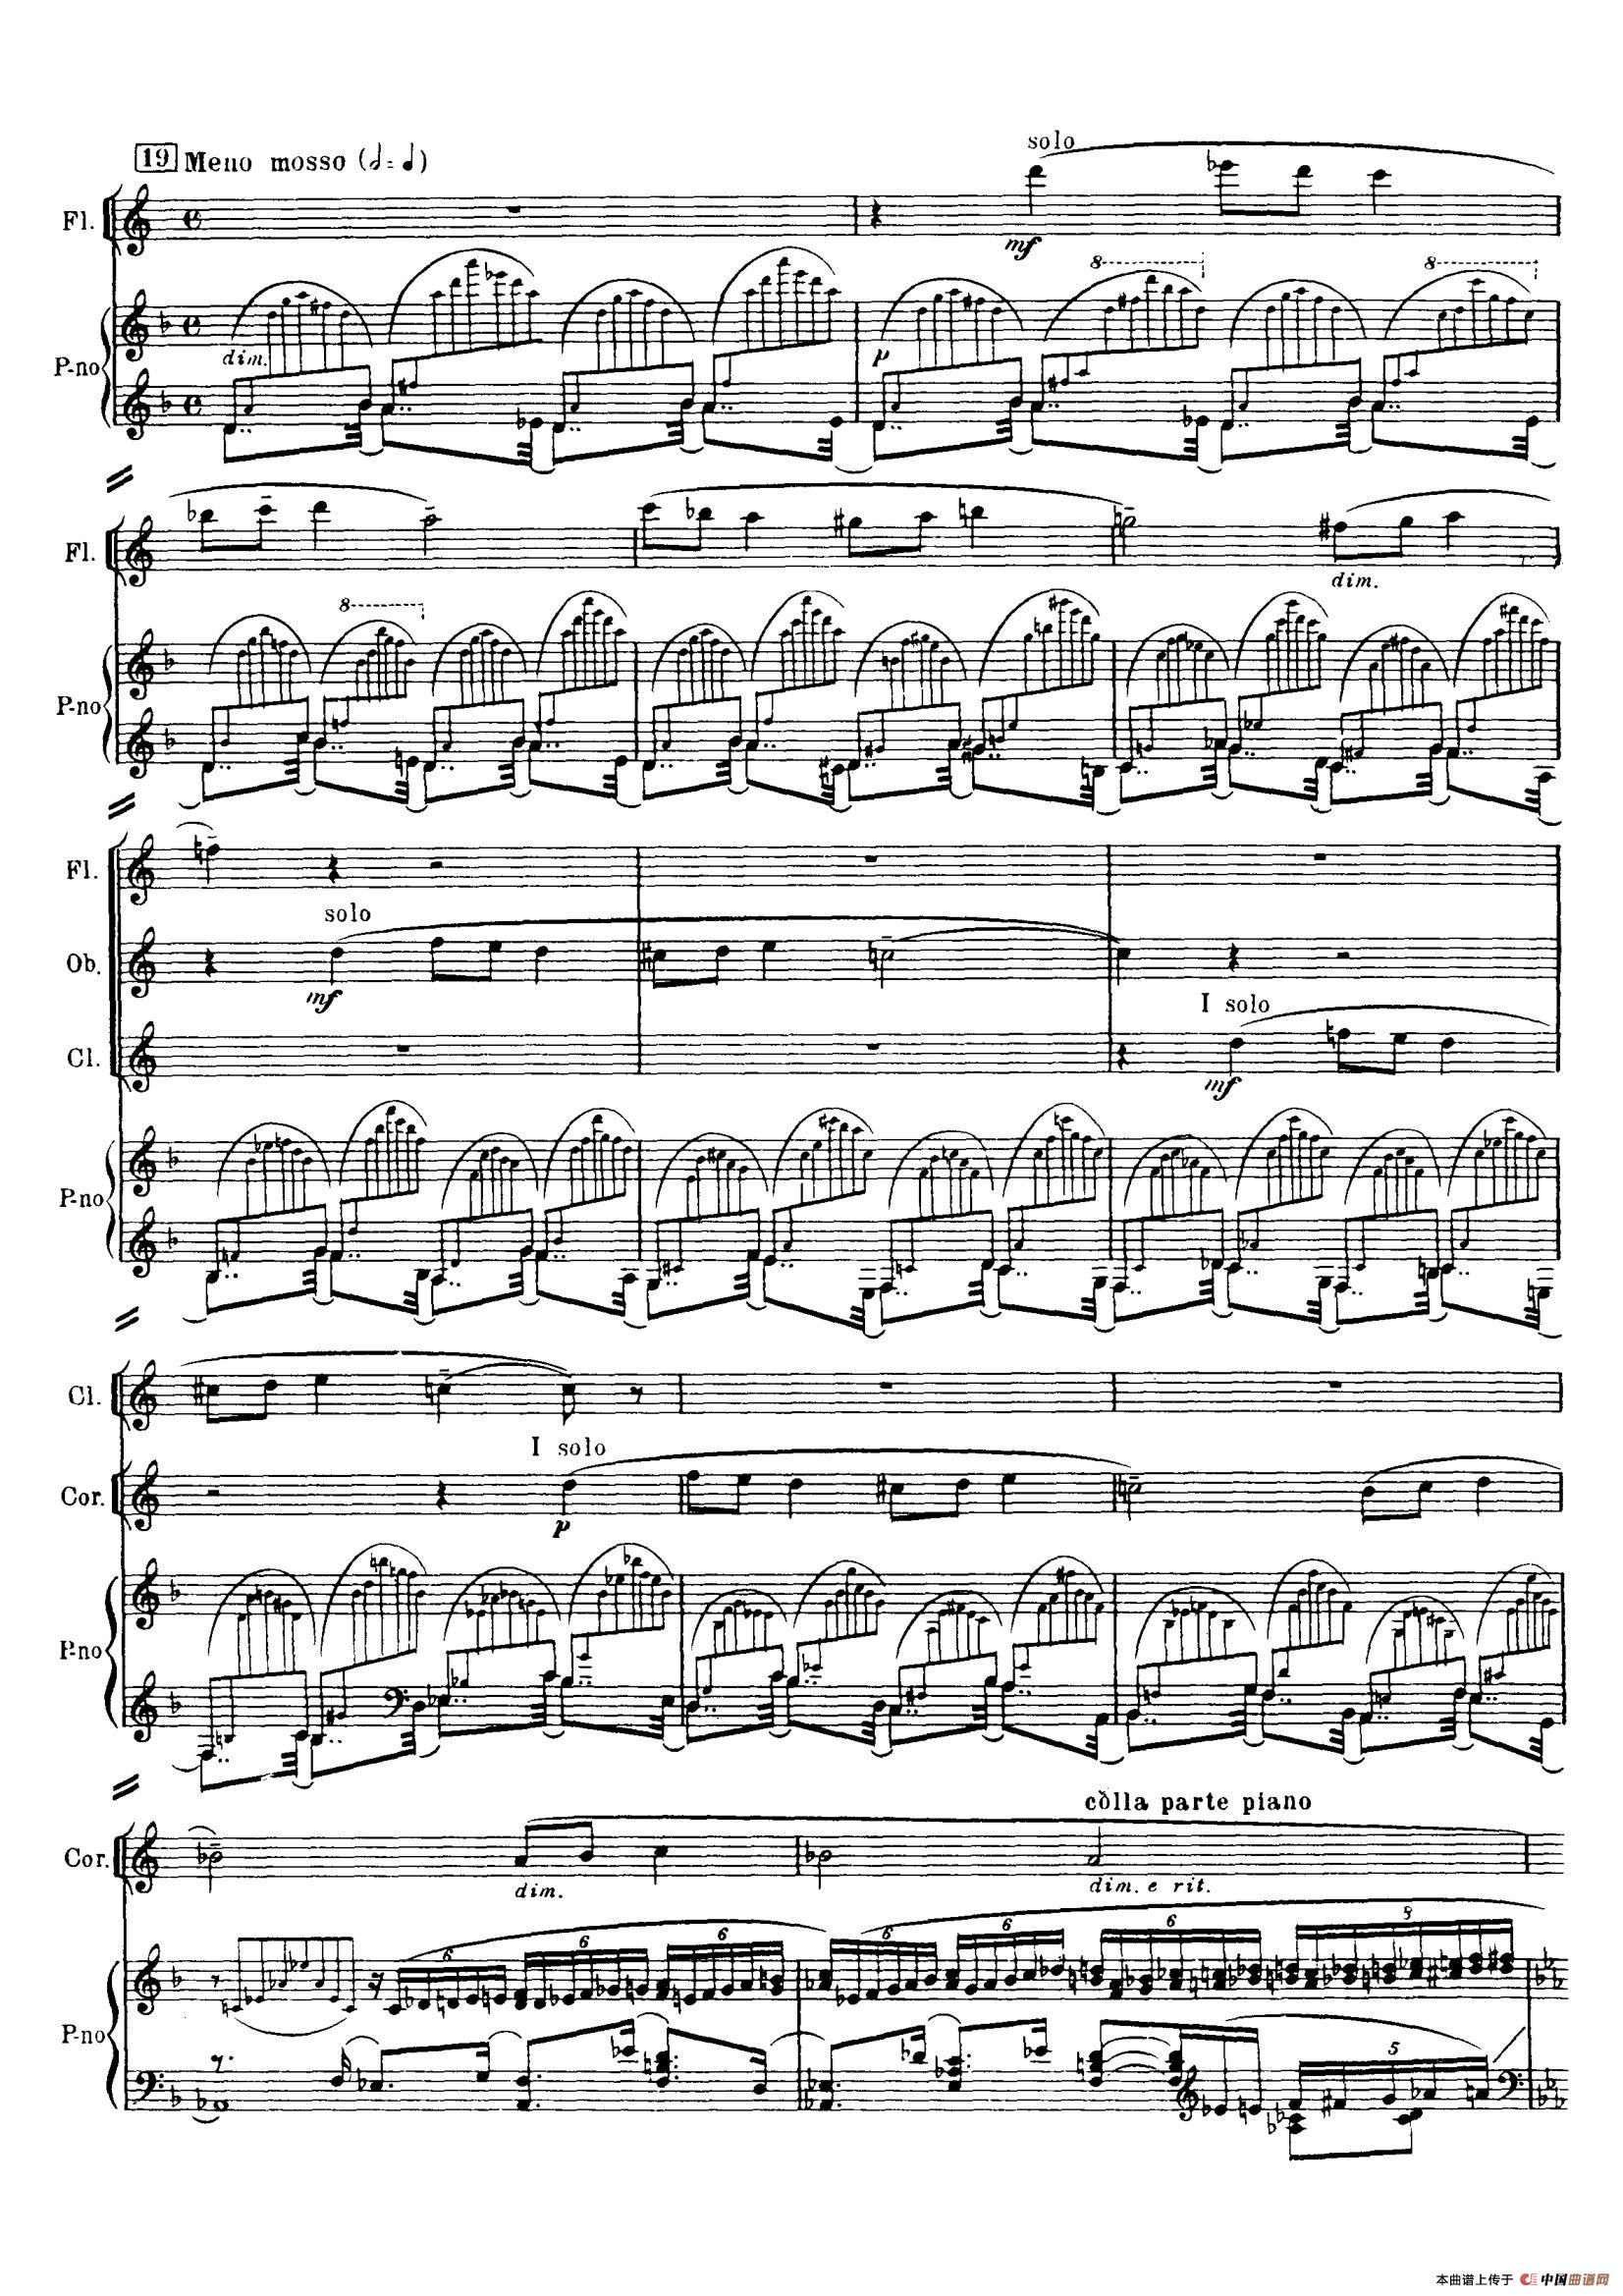 普罗科菲耶夫第三钢琴协奏曲钢琴谱(普罗科菲耶夫第三钢琴协奏曲钢琴谱带指法)